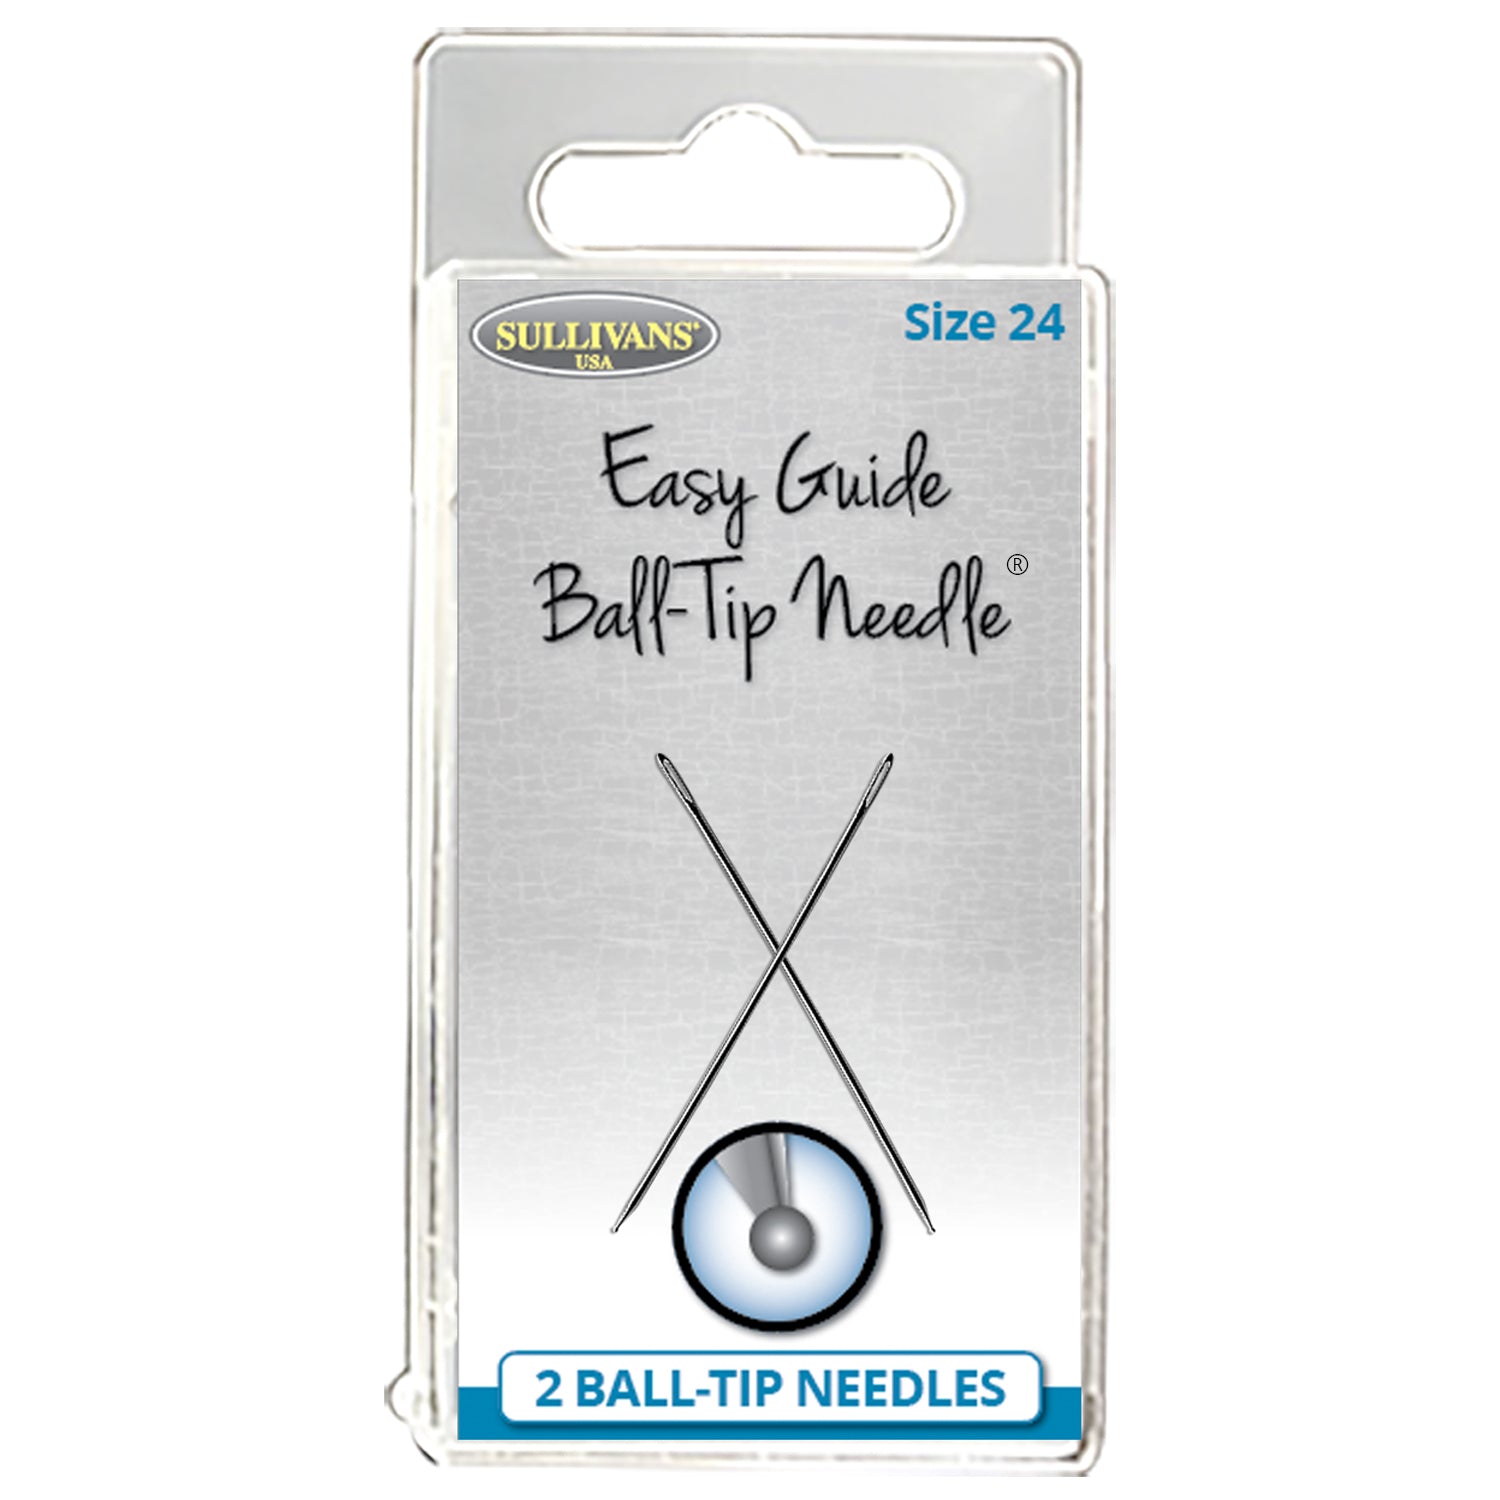 Sullivans Easy Guide Ball-Tip Needles 2/Pkg-Size 24 (40mm)